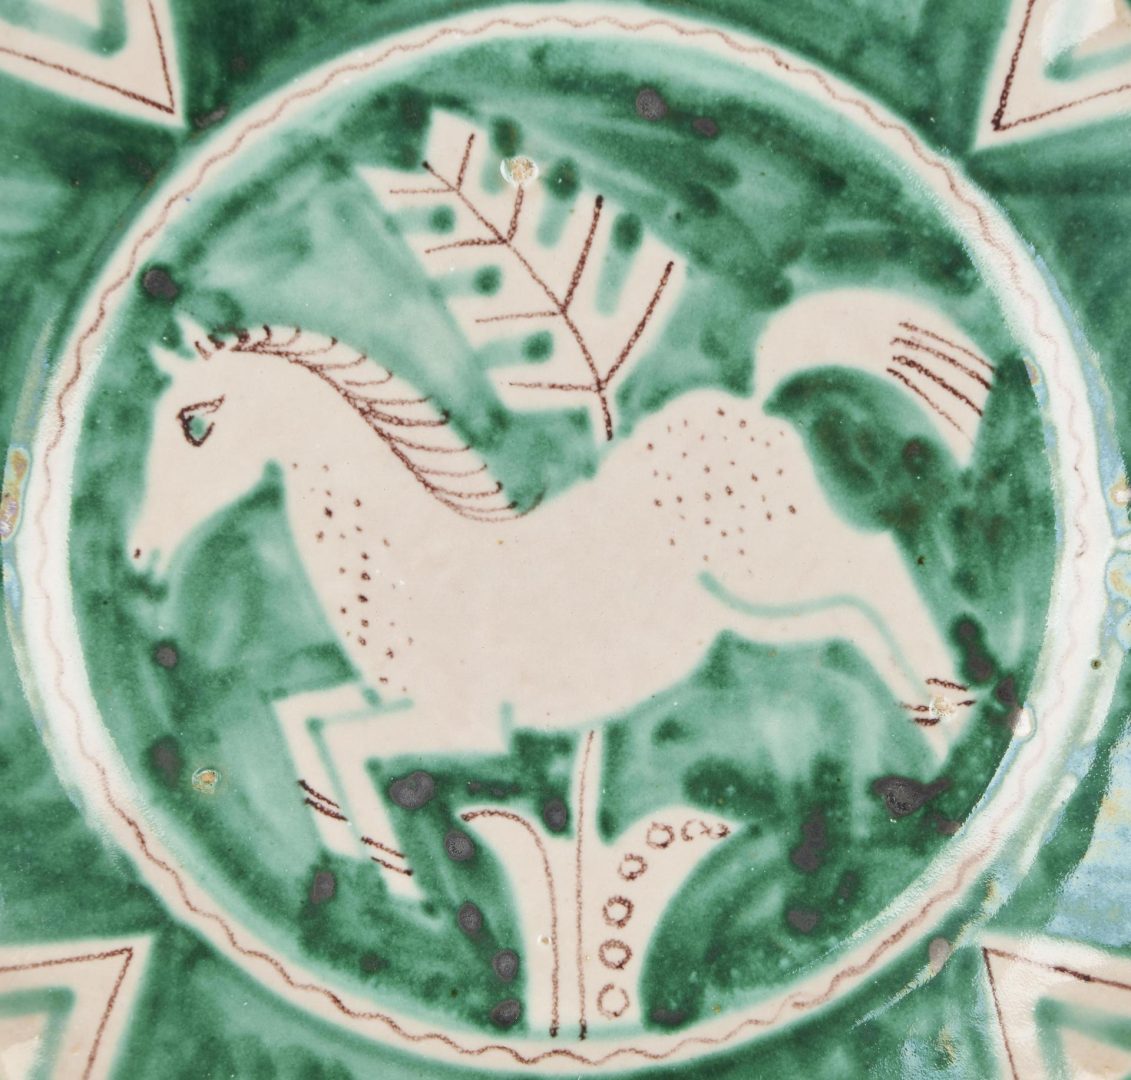 Lot 421: 4 1930s Vietri Italy Pottery Plates, Green w/ Horse Decoration